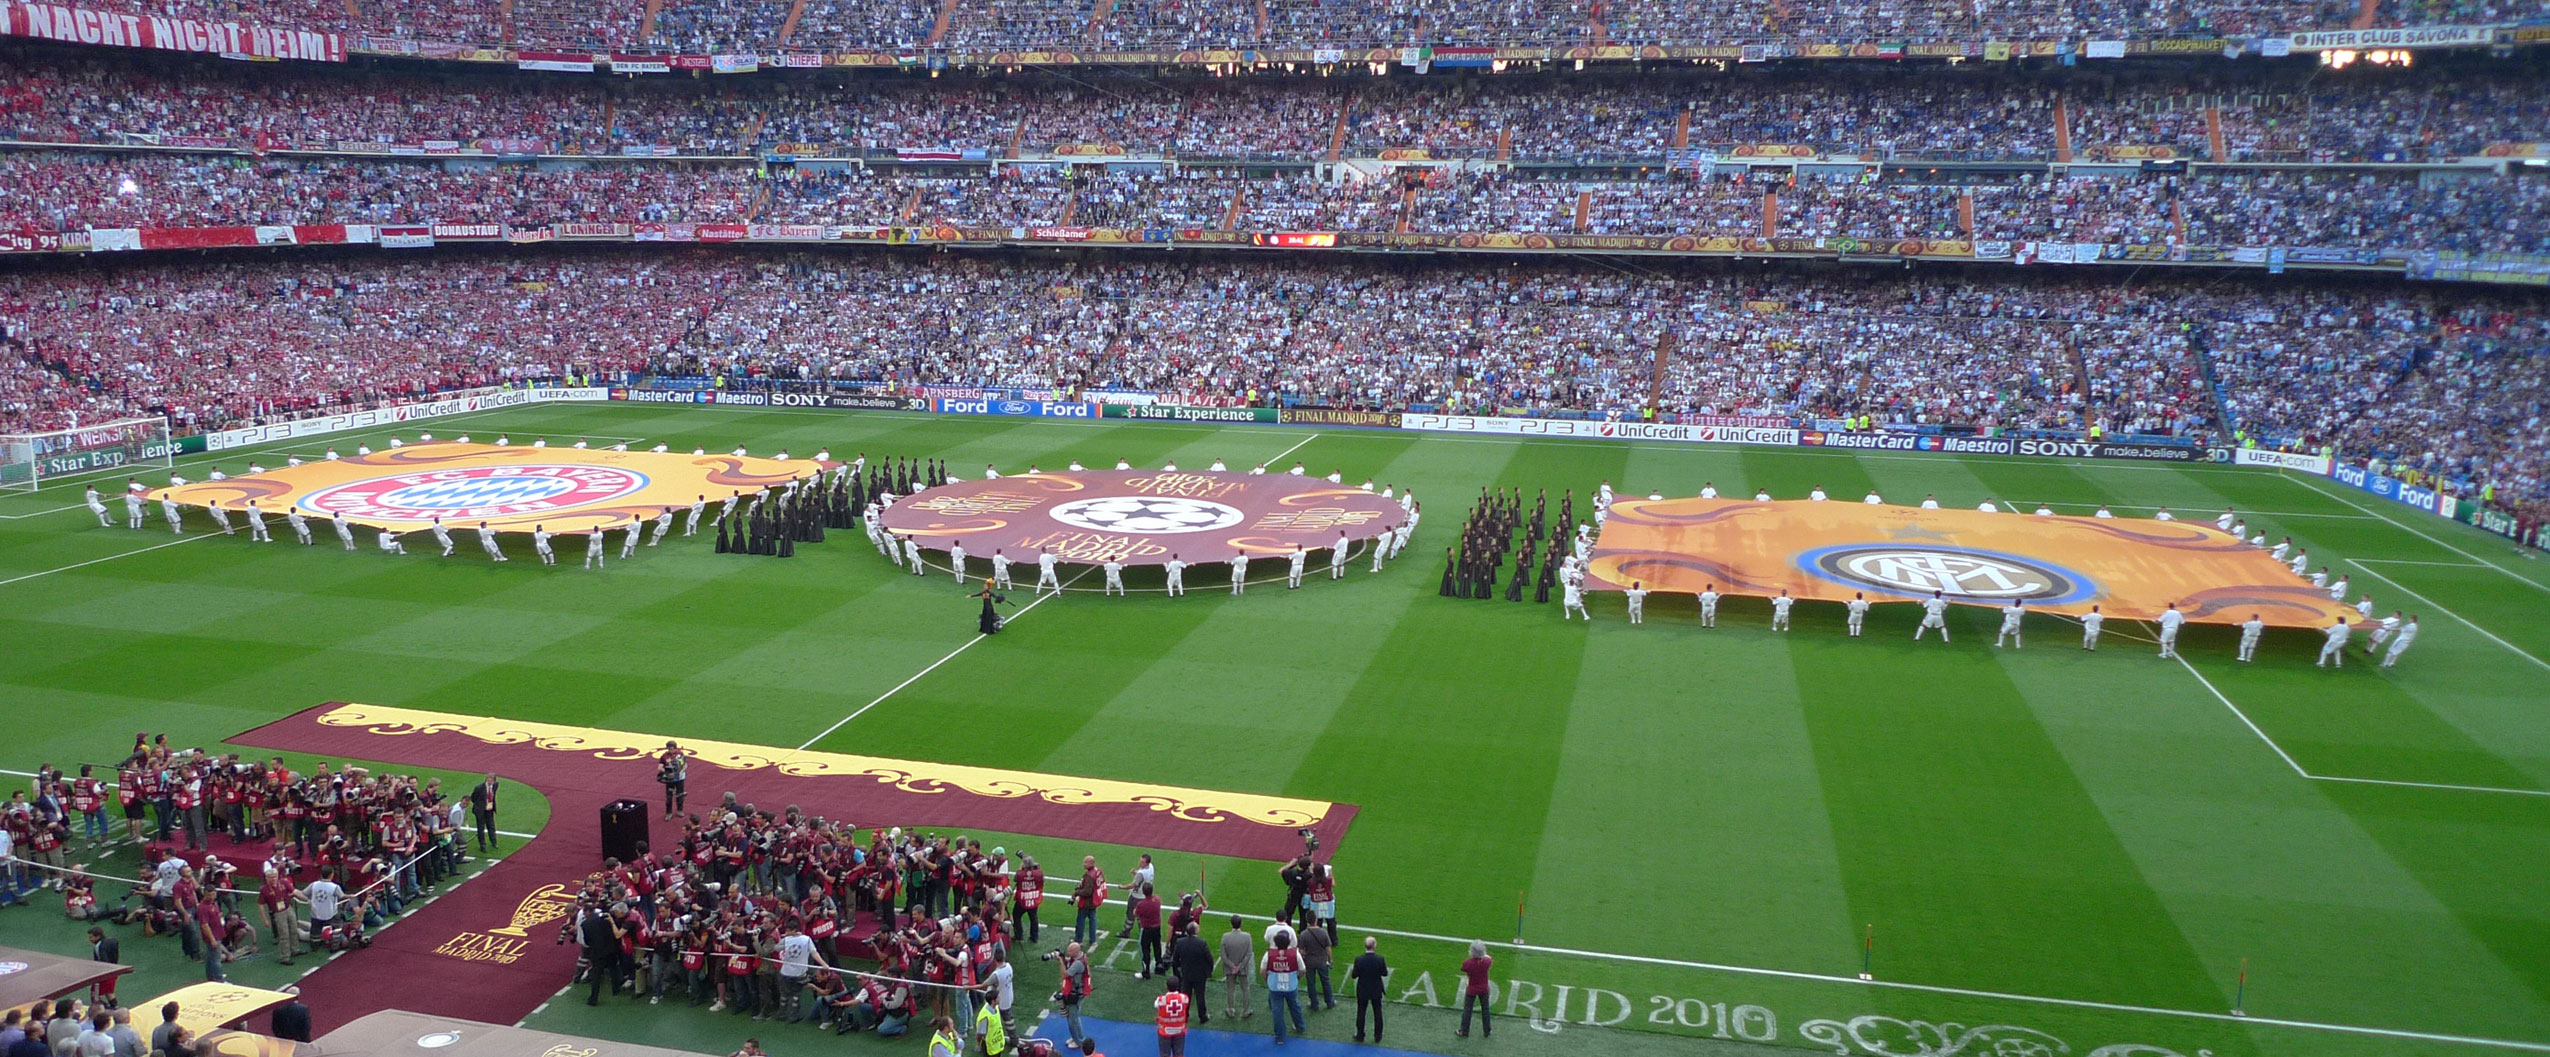 Cérémonie d'ouverture de la finale de la Ligue des champions de l'UEFA 2009-2010